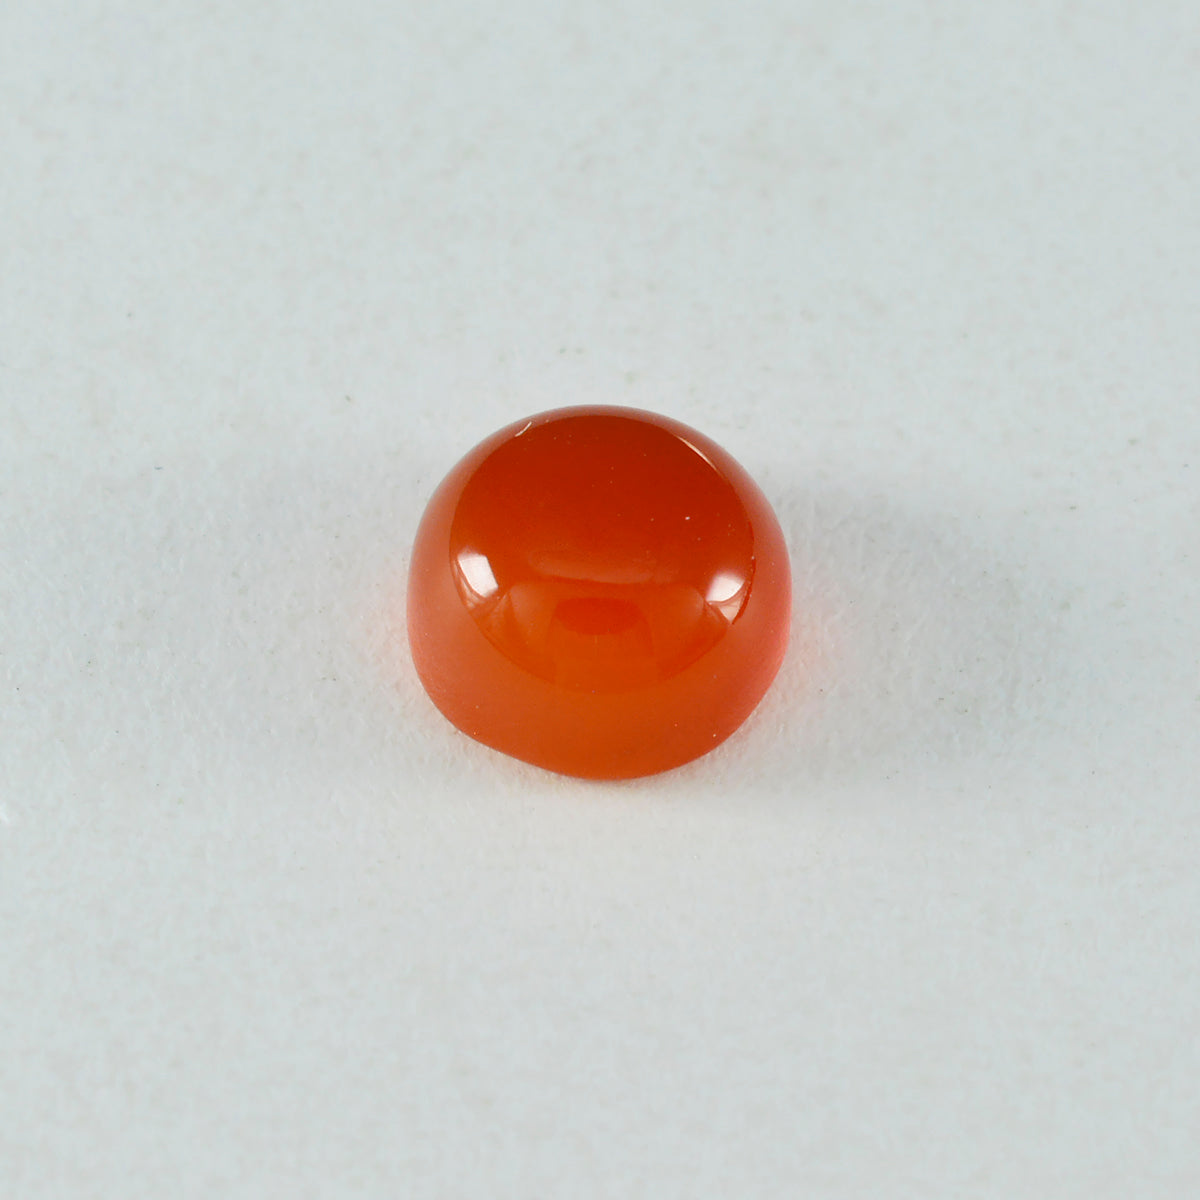 riyogems 1pc cabochon onyx rouge 15x15 mm forme ronde a pierres précieuses de qualité